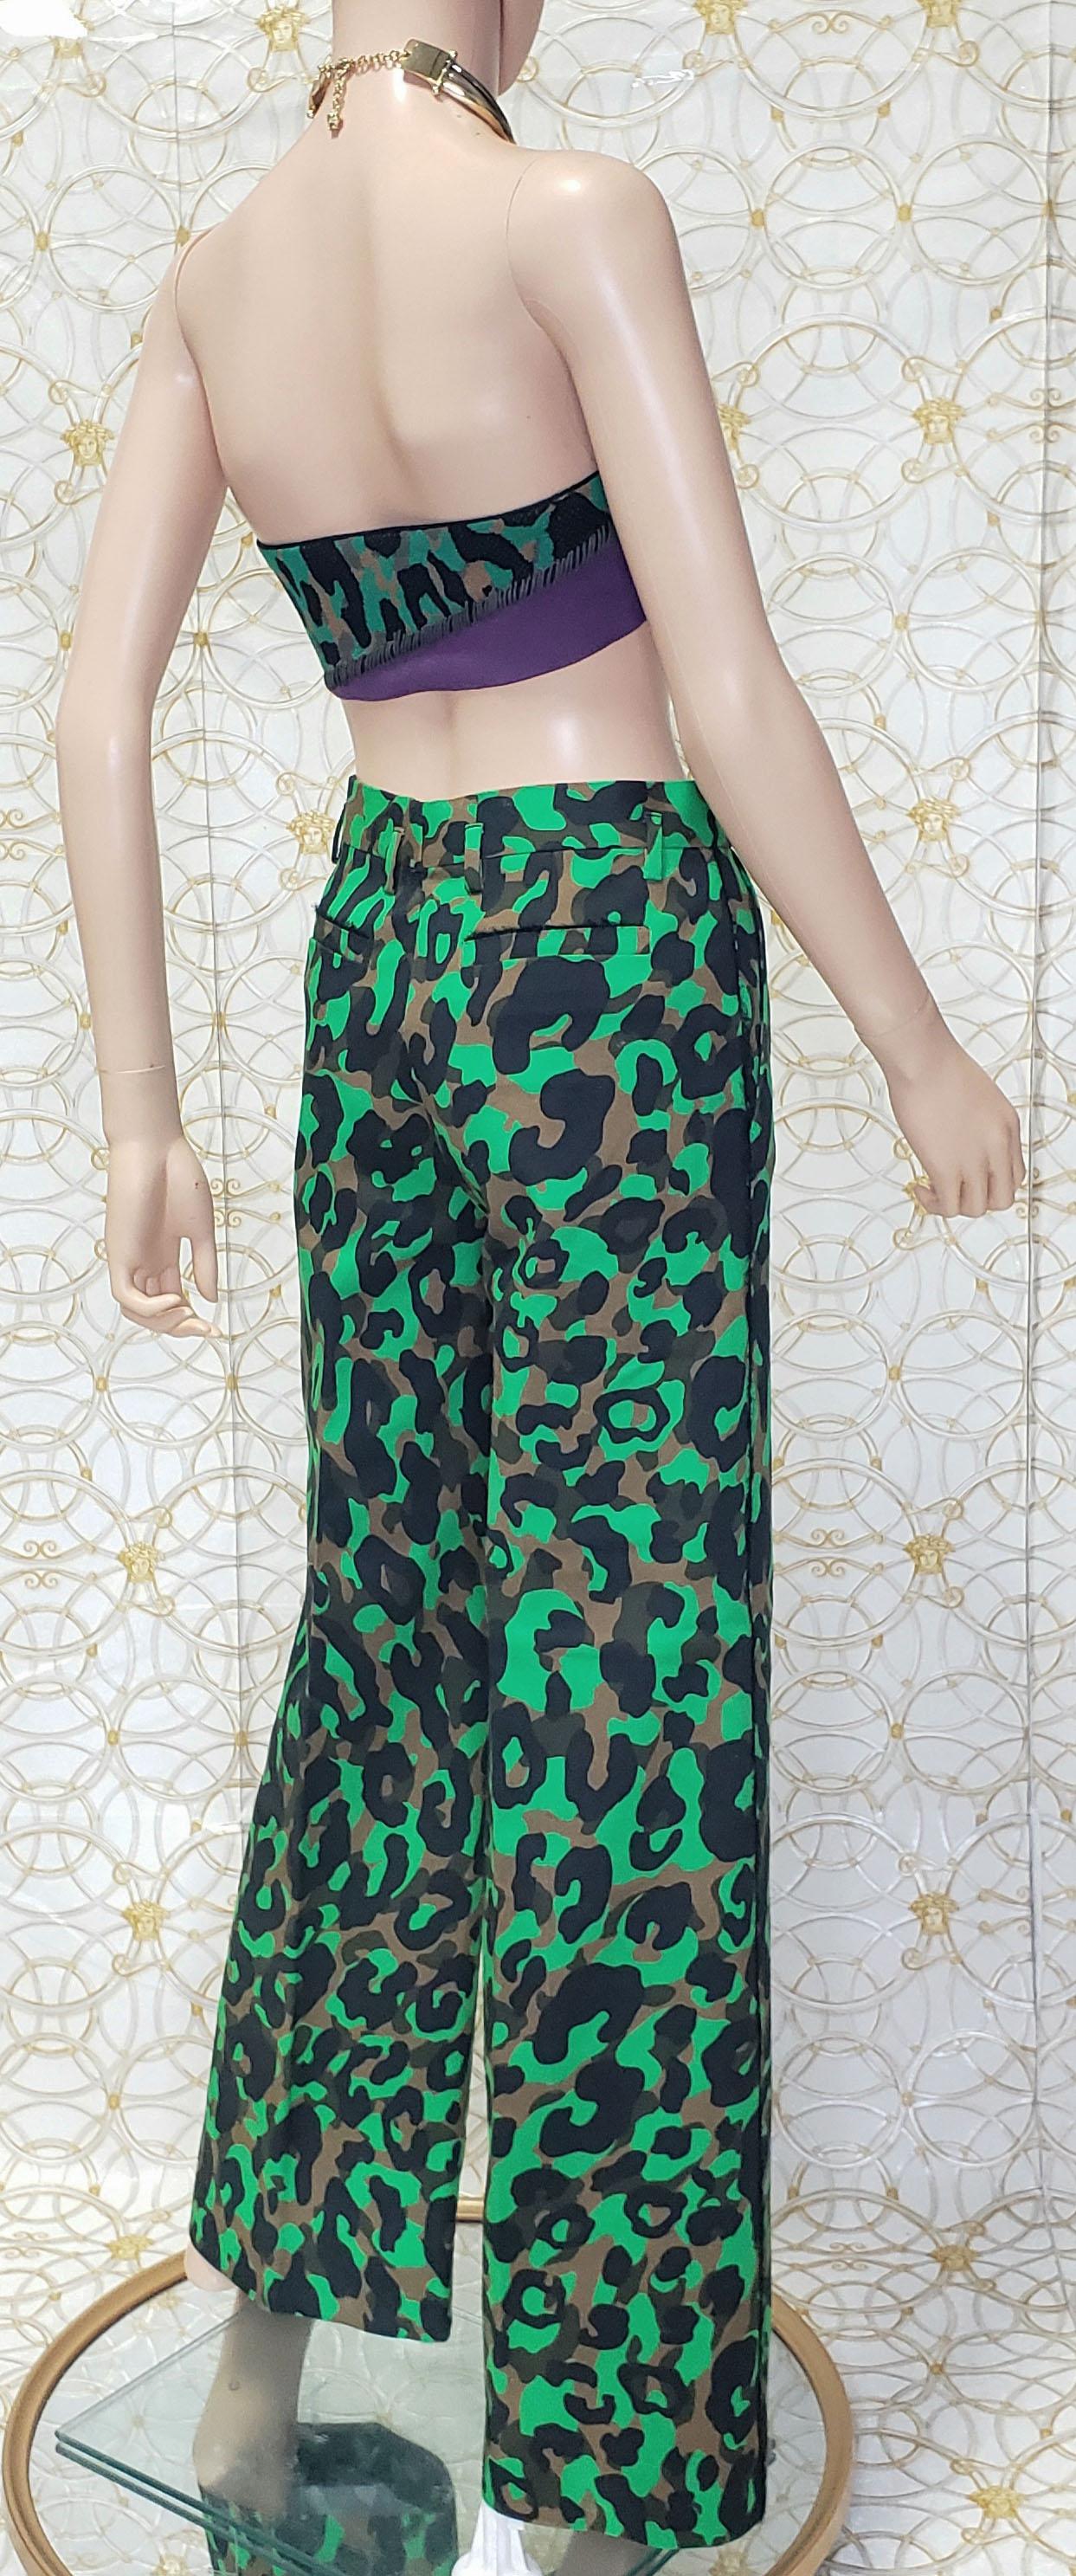 Pantalon imprimé camouflage militaire VERSACE S/S 2016 Look n° 13 taille 38 - 2 Unisexe en vente